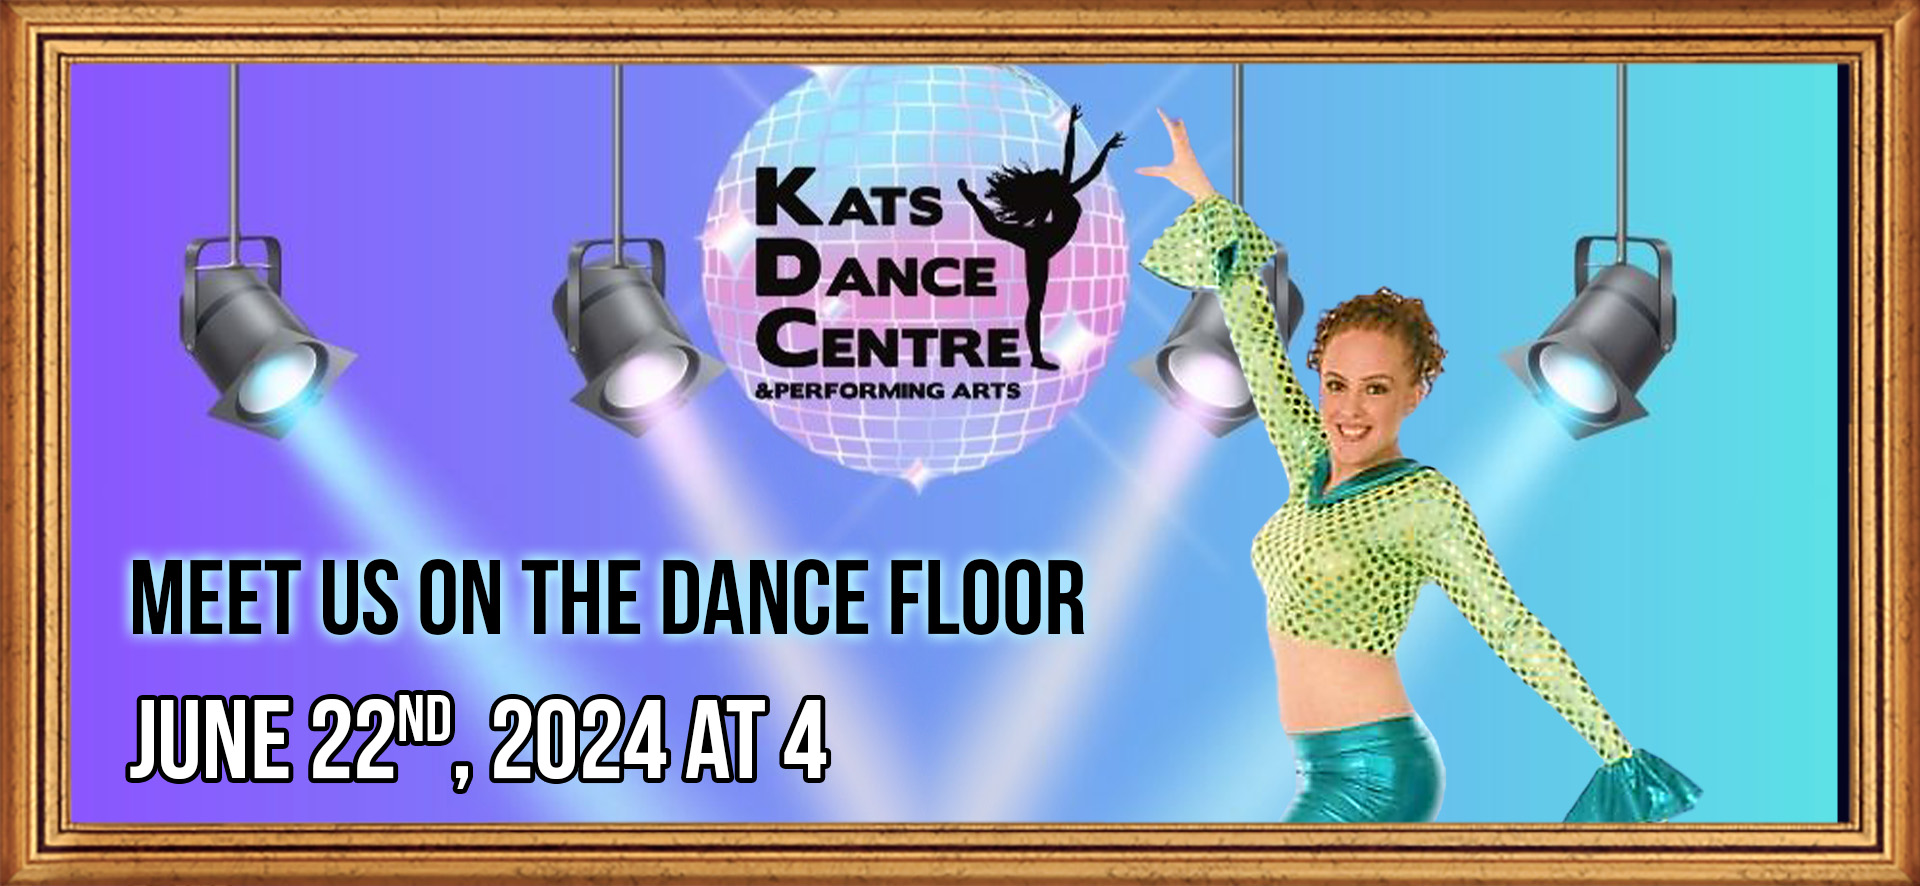 Kats Dance Centre & Performing Arts presents "Meet Us on the Dance Floor"